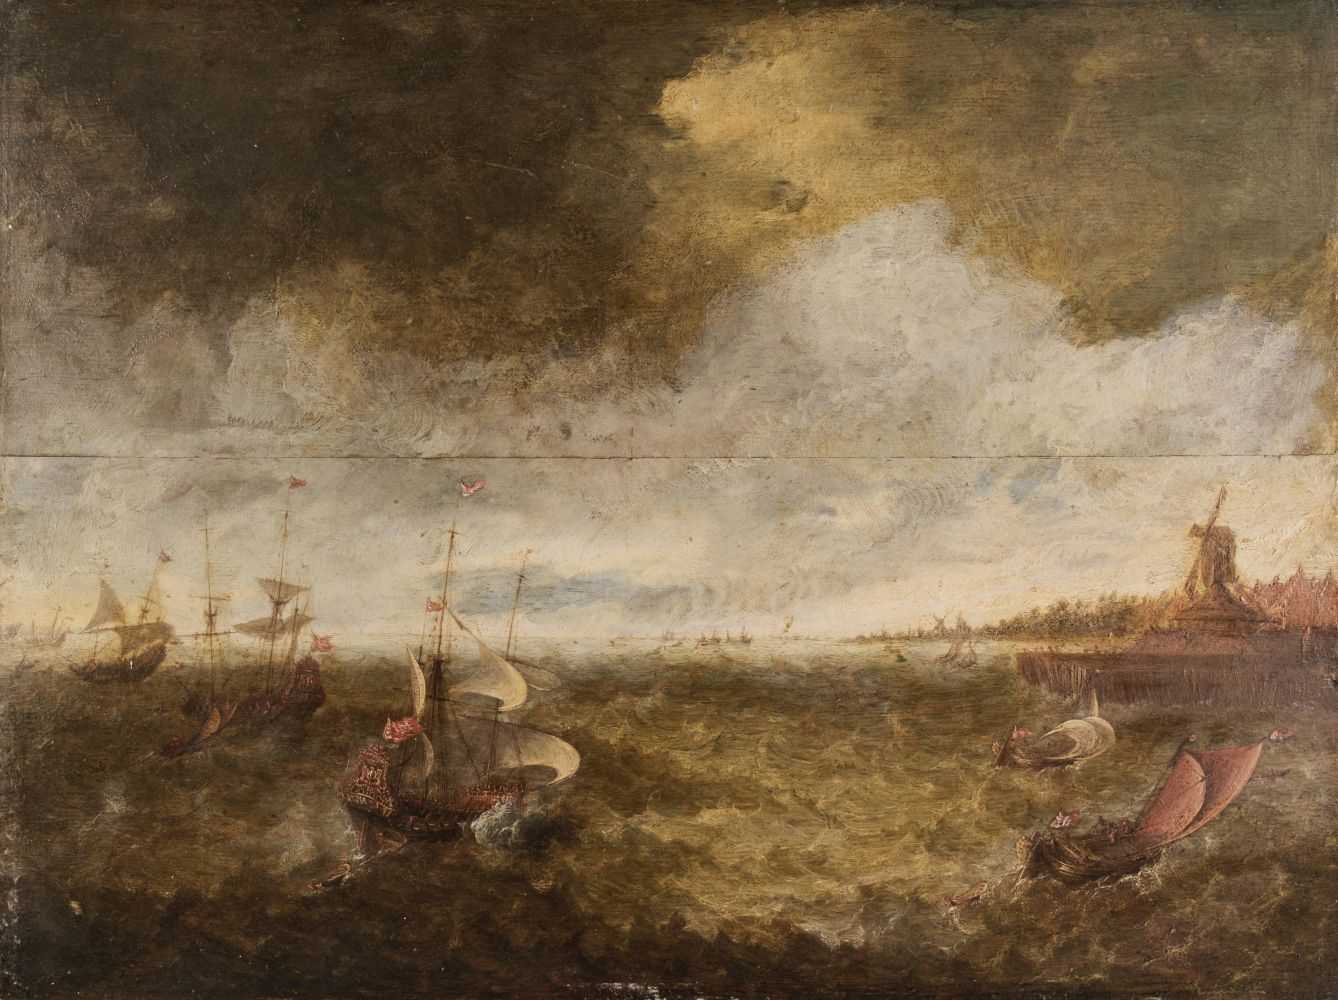 Lot 3 - Dutch School, 17th Century School, Dutch galleons on choppy seas